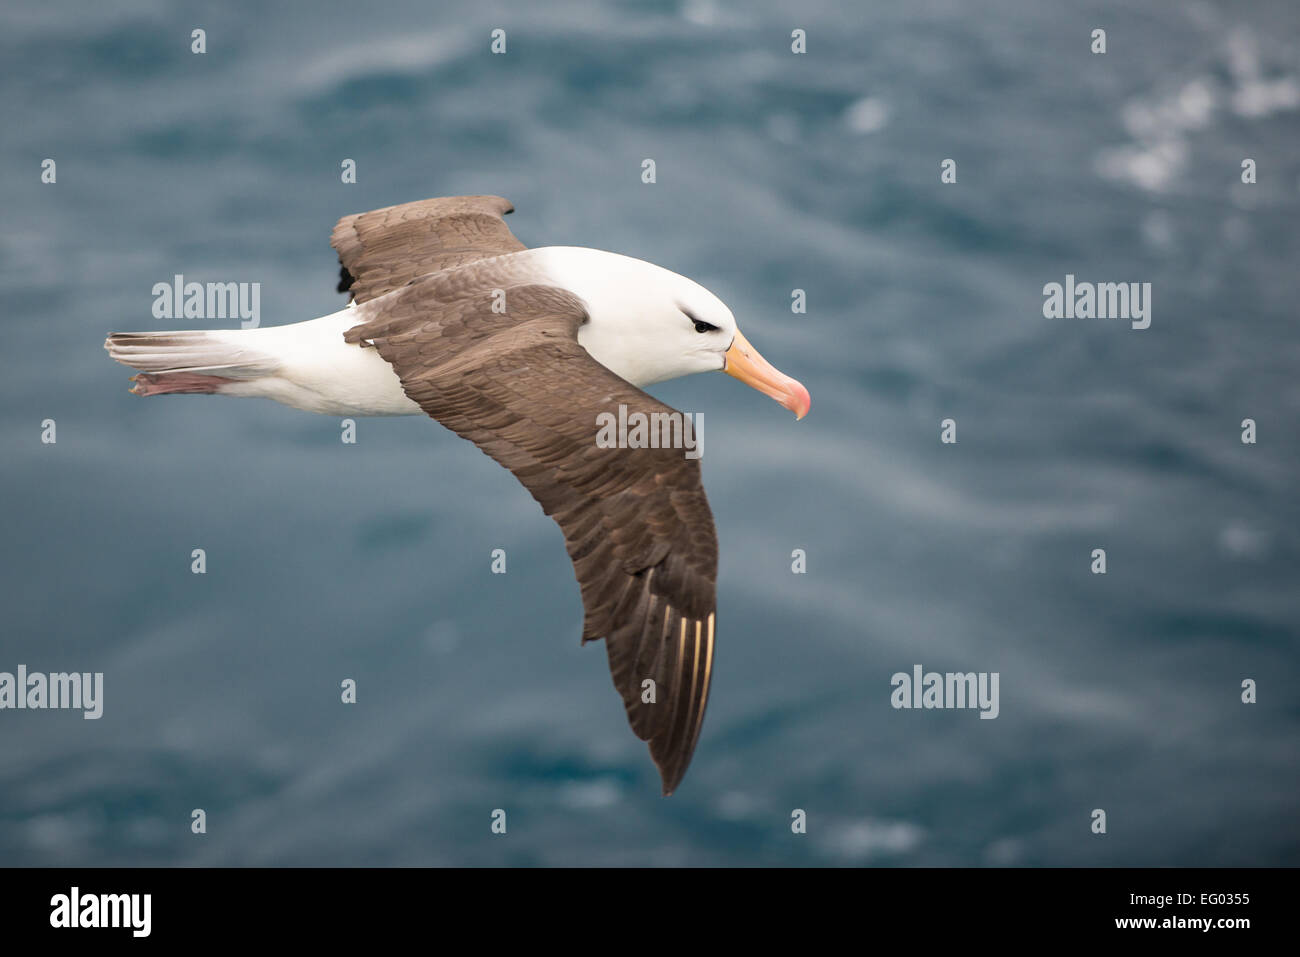 Black brow albatross in flight over ocean Stock Photo